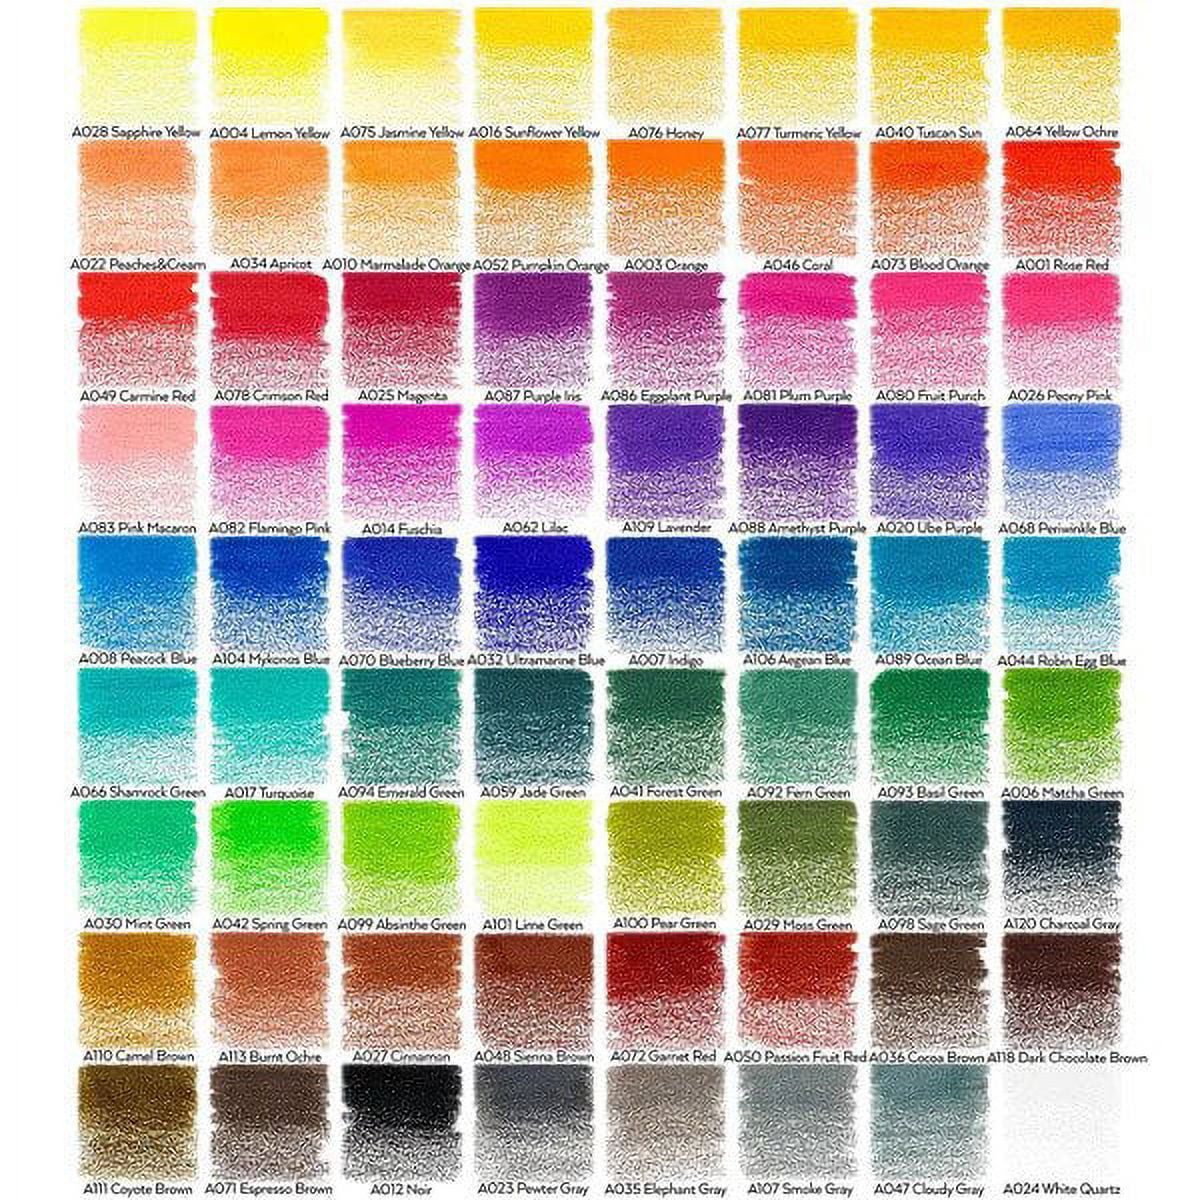 Arteza Vibrant Colored Pencils Set Assorted Colors 72pk